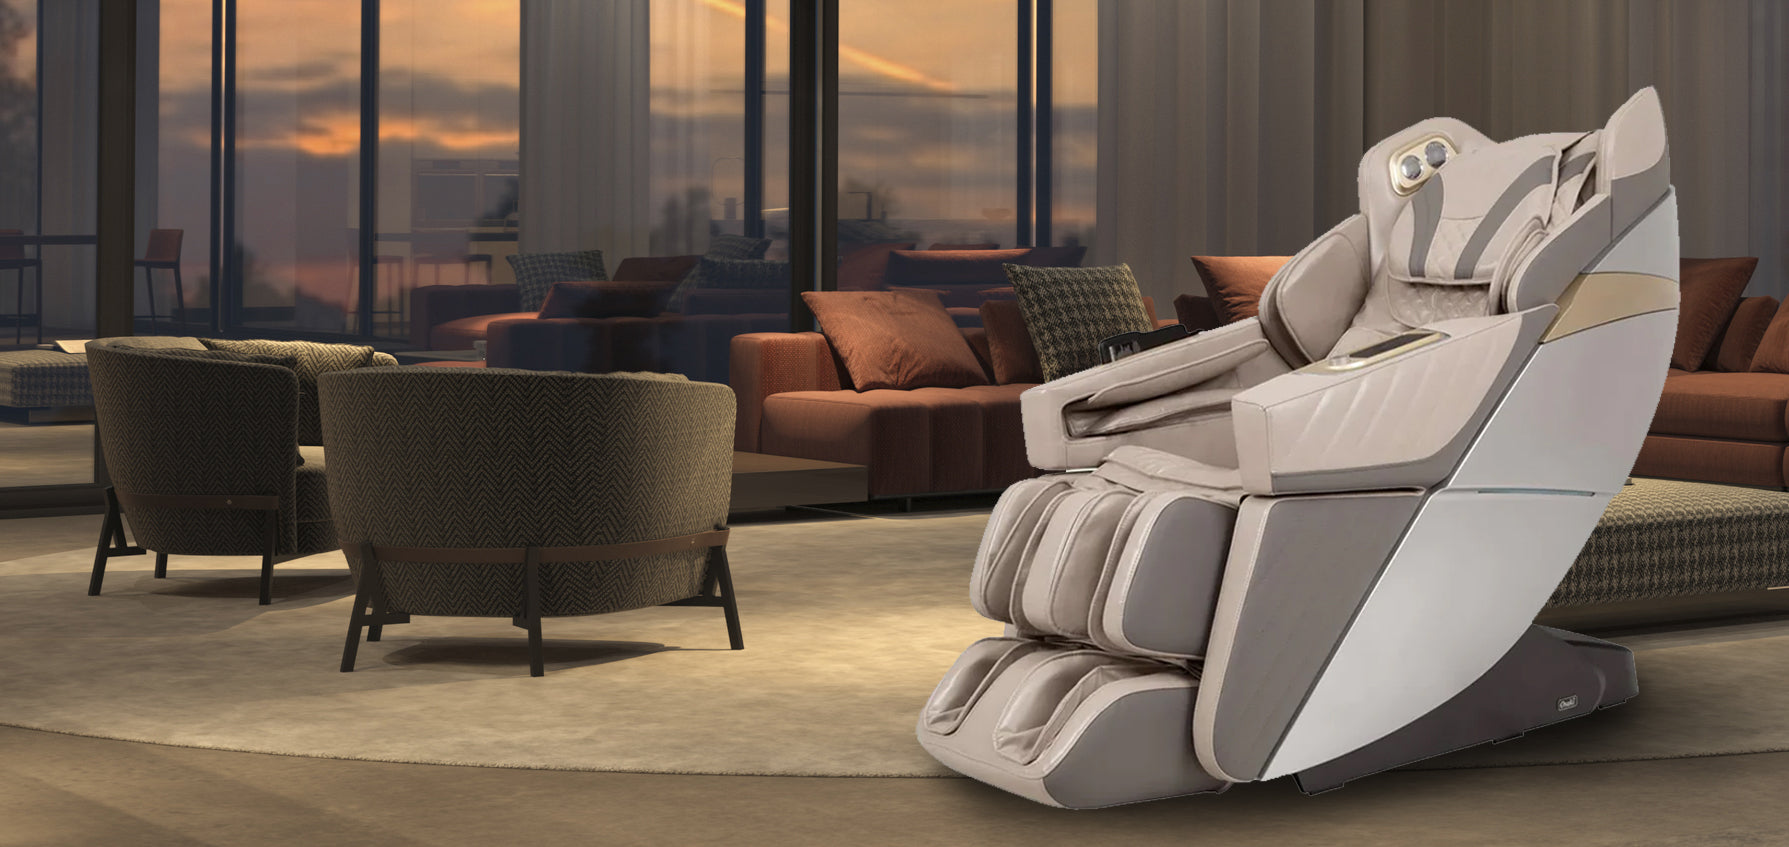 Osaki OS-3D Hamilton LE Massage Chair